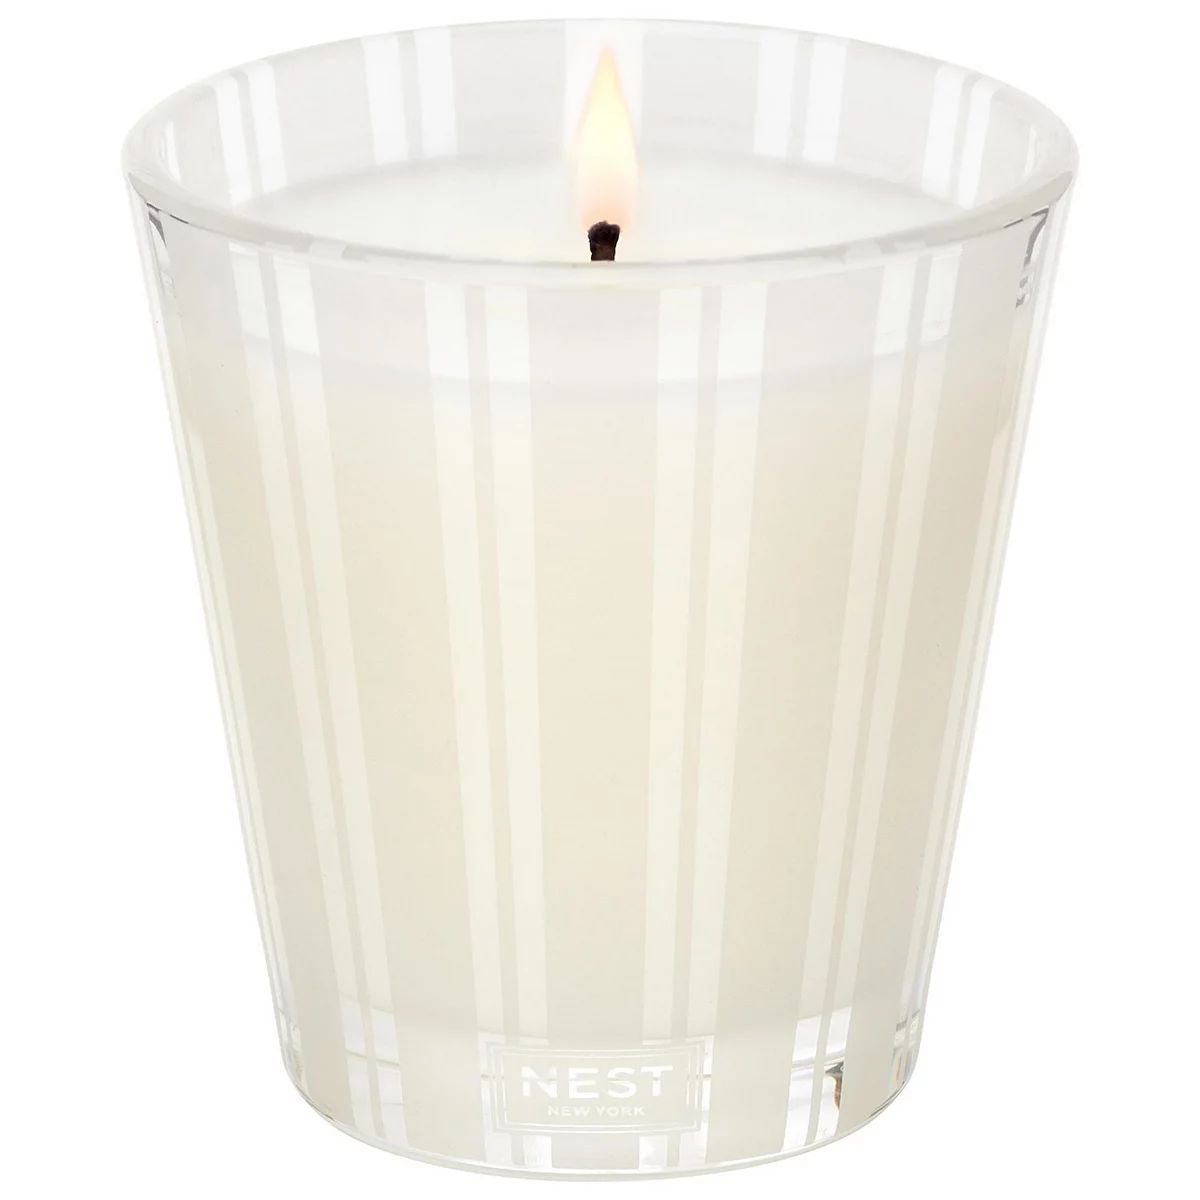 NEST New York Madagascar Vanilla Candle | Kohl's